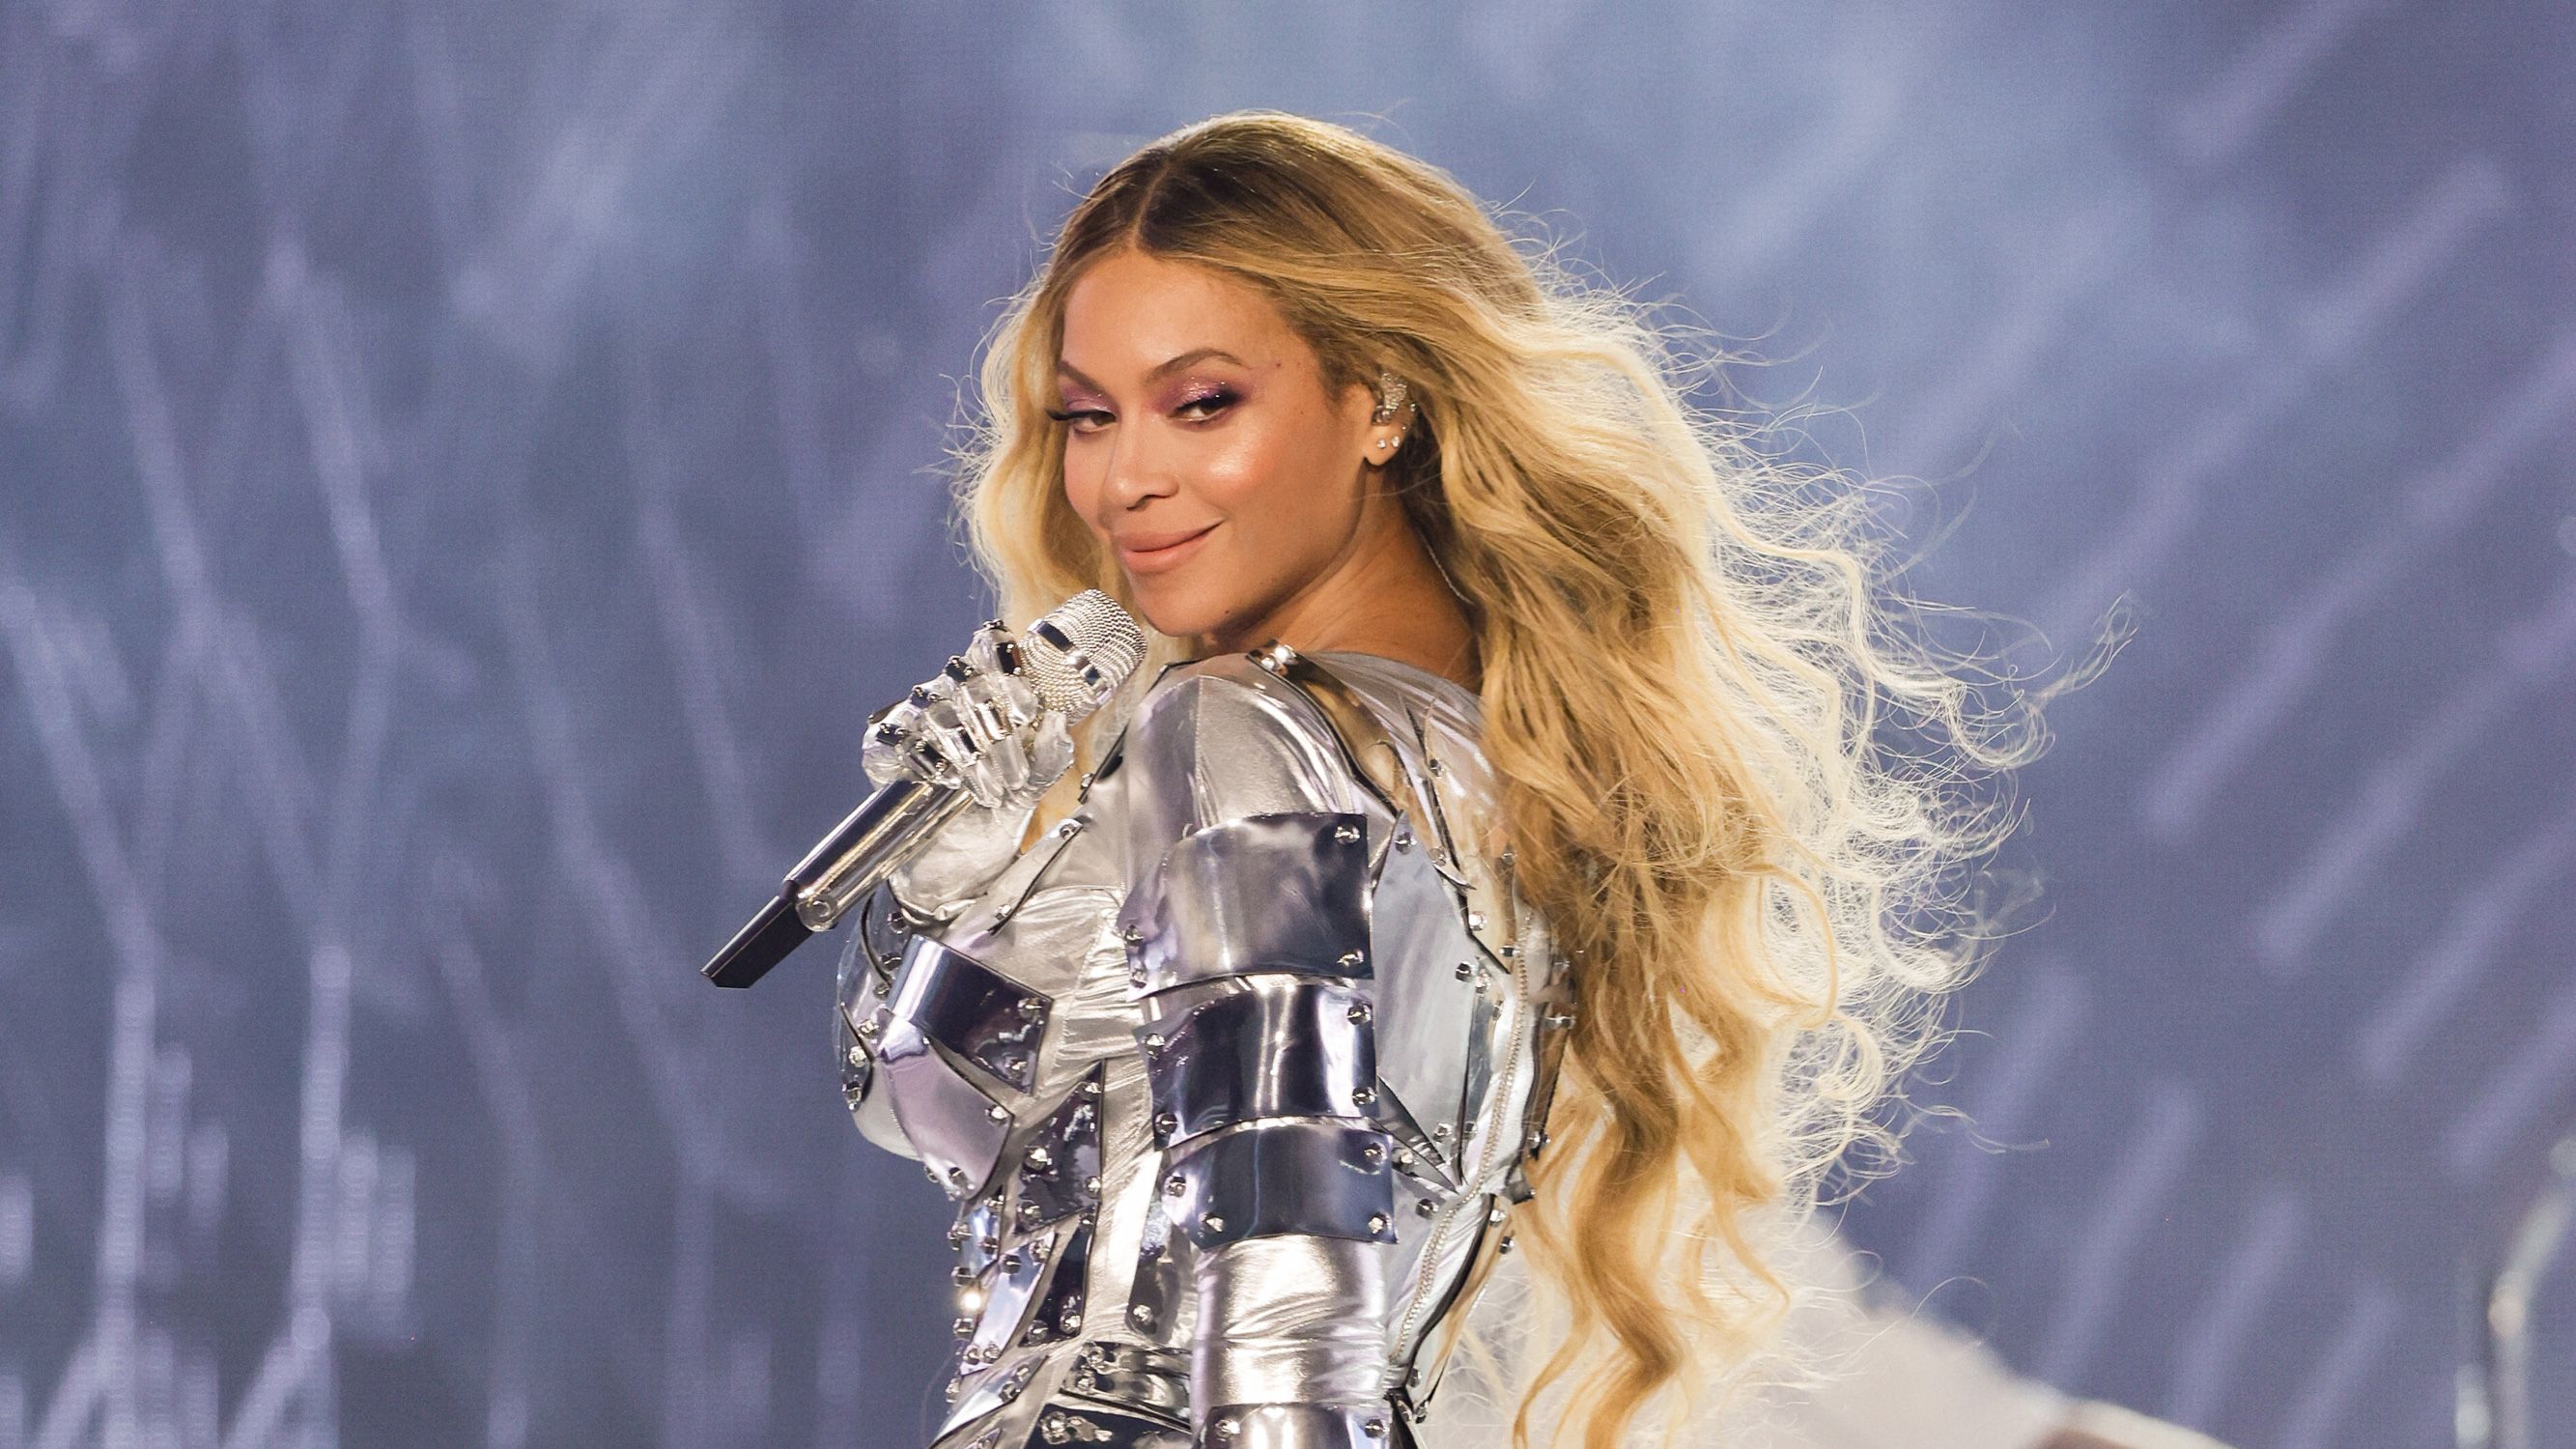 Beyoncé Renaissance Film Release Date, Cast News and Spoilers